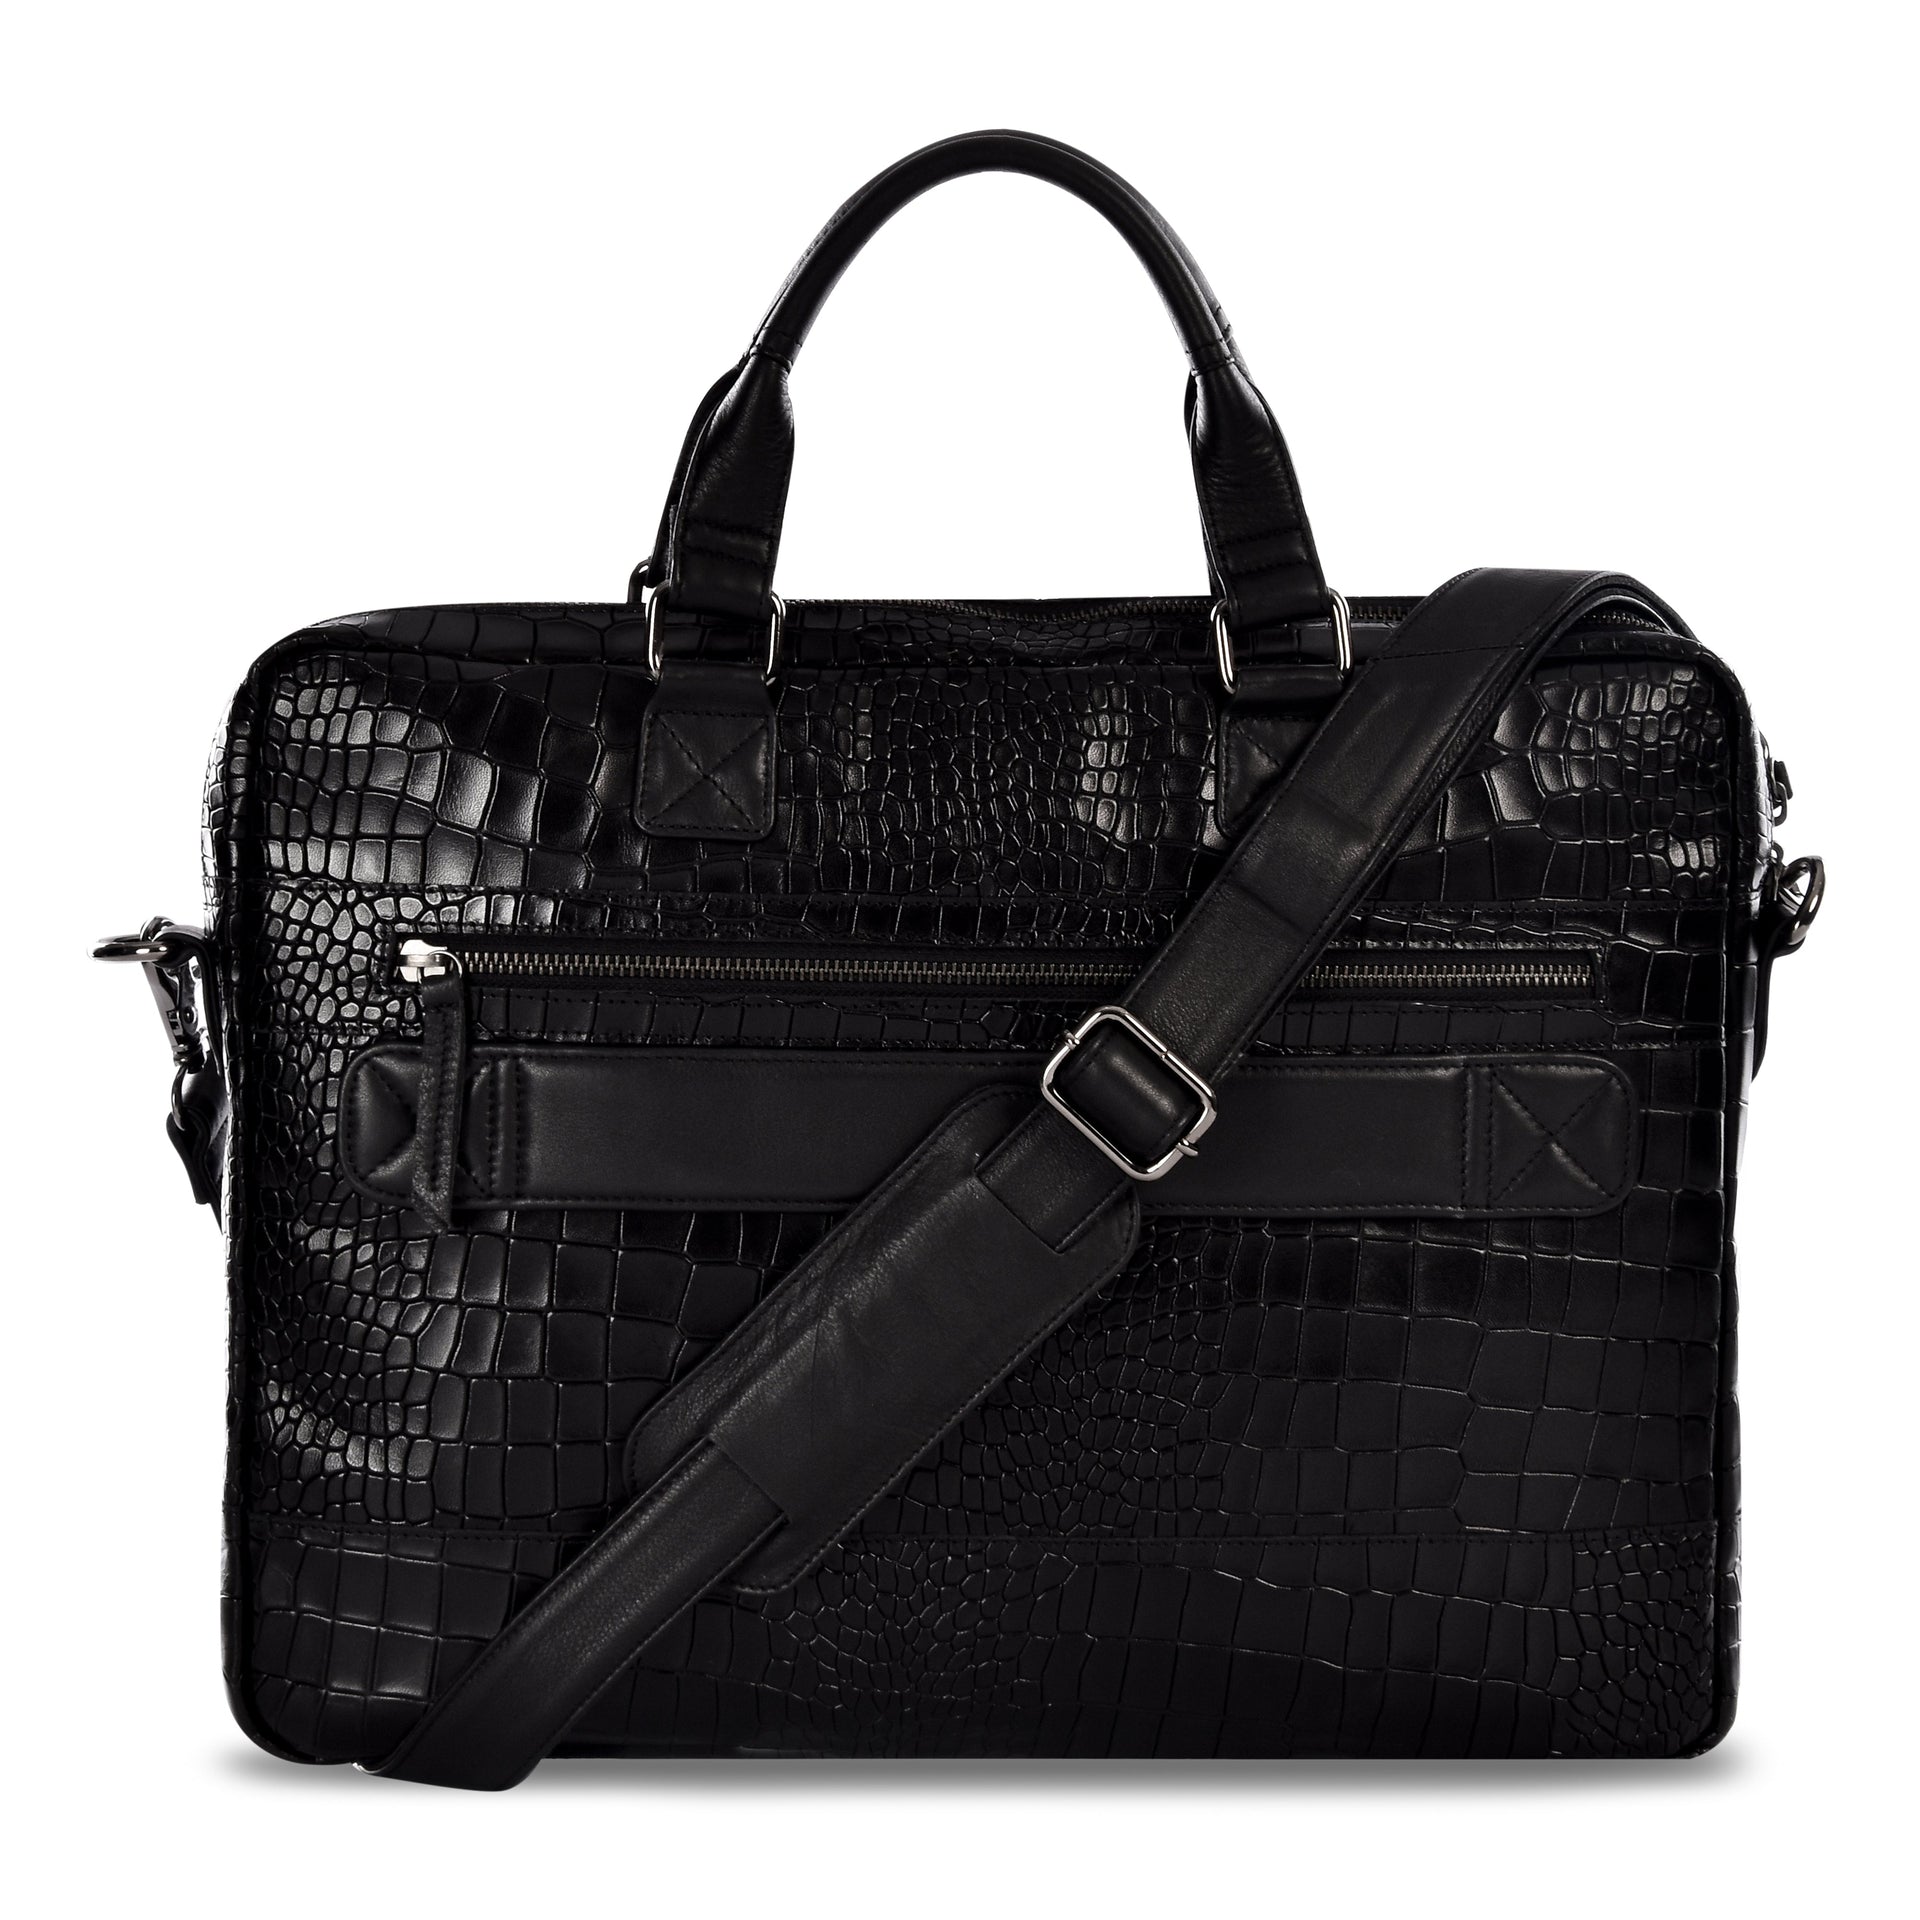 Caiman Business Bag - Salient Black - Laptop Bags